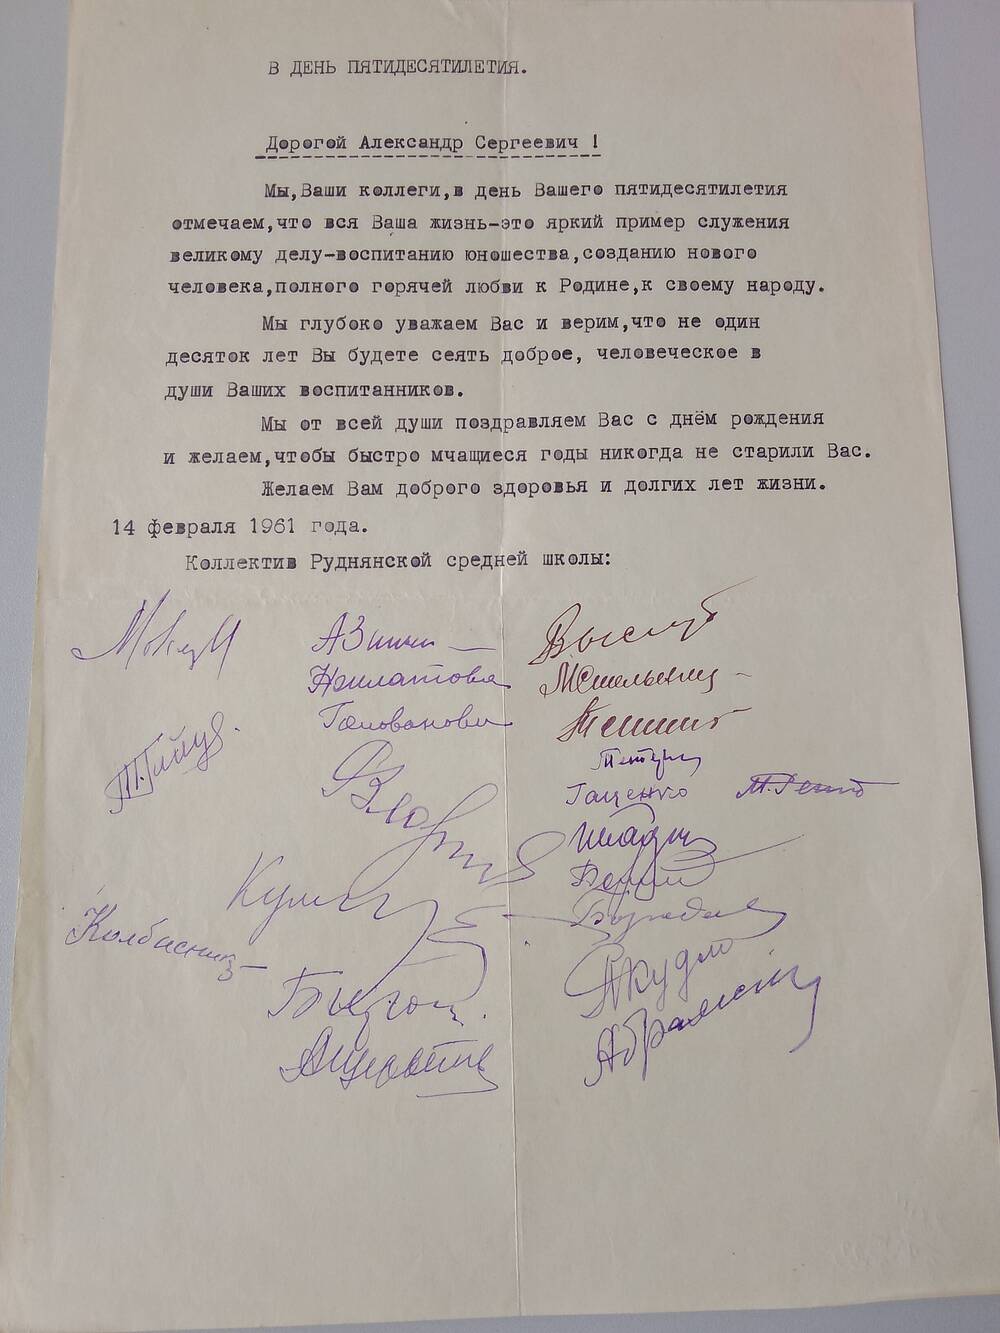 Письмо поздравительное от коллектива Руднянской средней школы в день 50-летия Щербакова А. С.